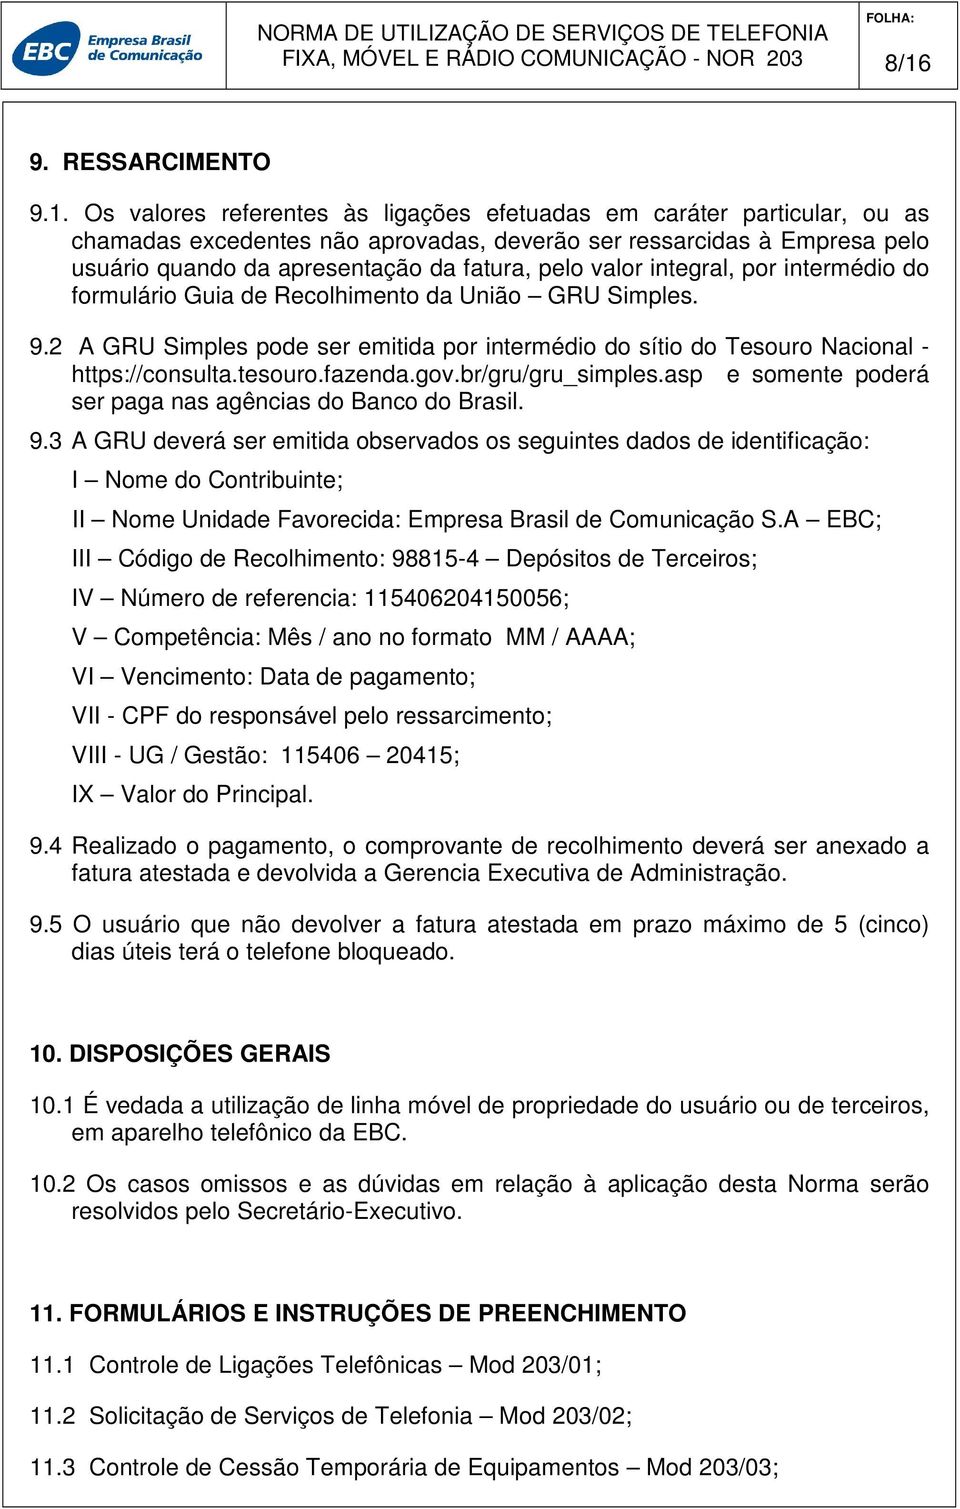 2 A GRU Simples pode ser emitida por intermédio do sítio do Tesouro Nacional - https://consulta.tesouro.fazenda.gov.br/gru/gru_simples.asp e somente poderá ser paga nas agências do Banco do Brasil. 9.